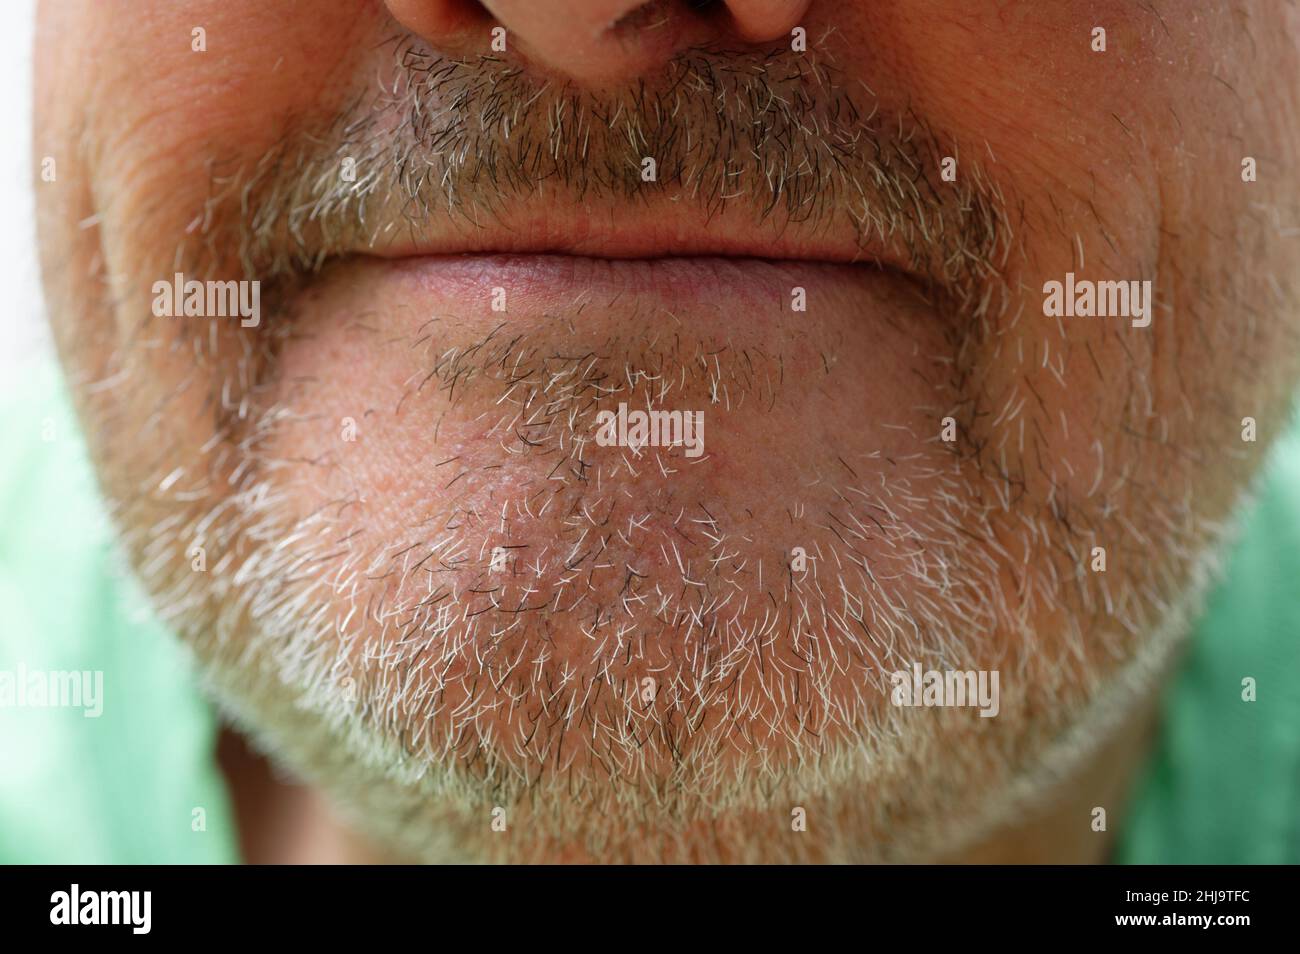 Eine abgeschnittene Aufnahme des Kinns eines Mannes mit schwarzen und grauen Stoppeln. Seine Lippen sind geschlossen, lächeln aber leicht. Seine Nasenlöcher sind nur im Rahmen. Stockfoto